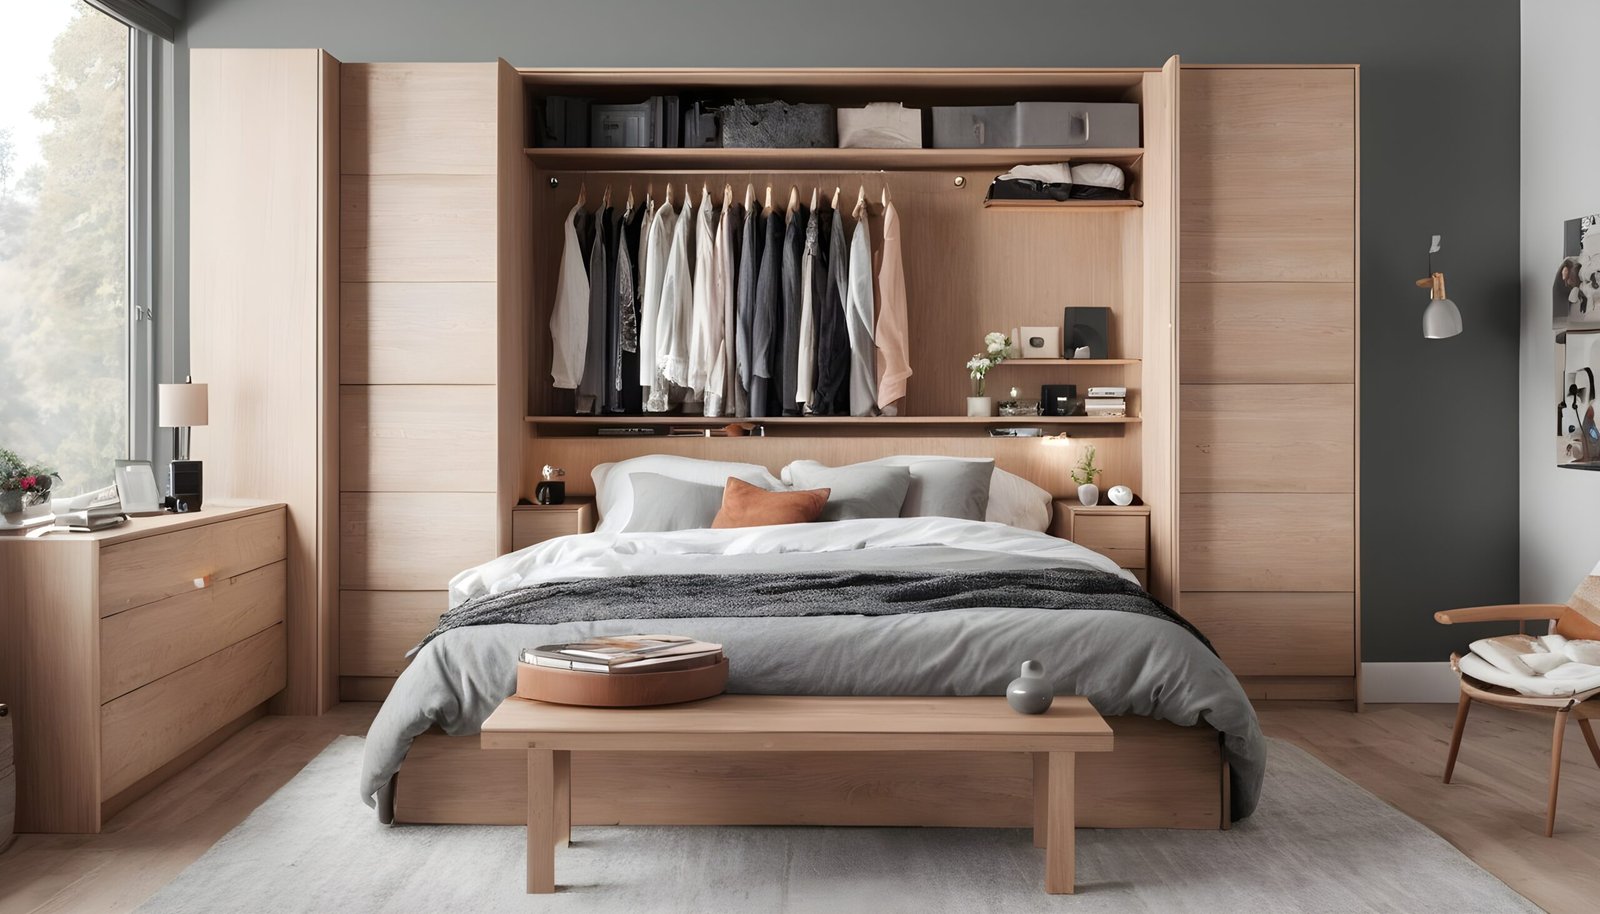 Smart storage solutions in bedroom.